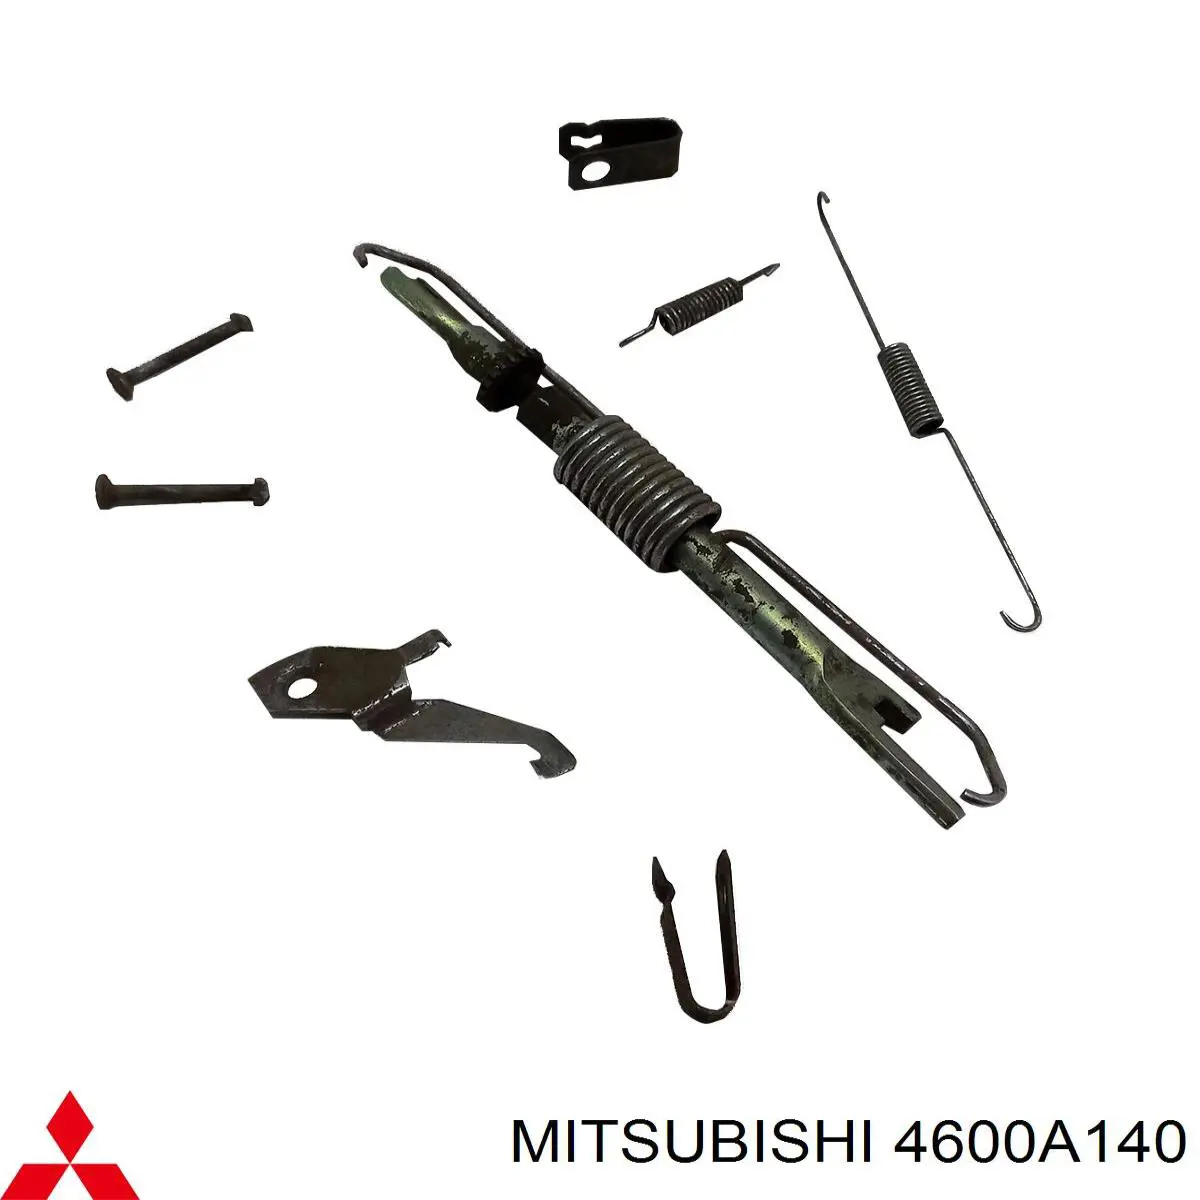 4600A140 Mitsubishi kit de reparacion mecanismo suministros (autoalimentacion)